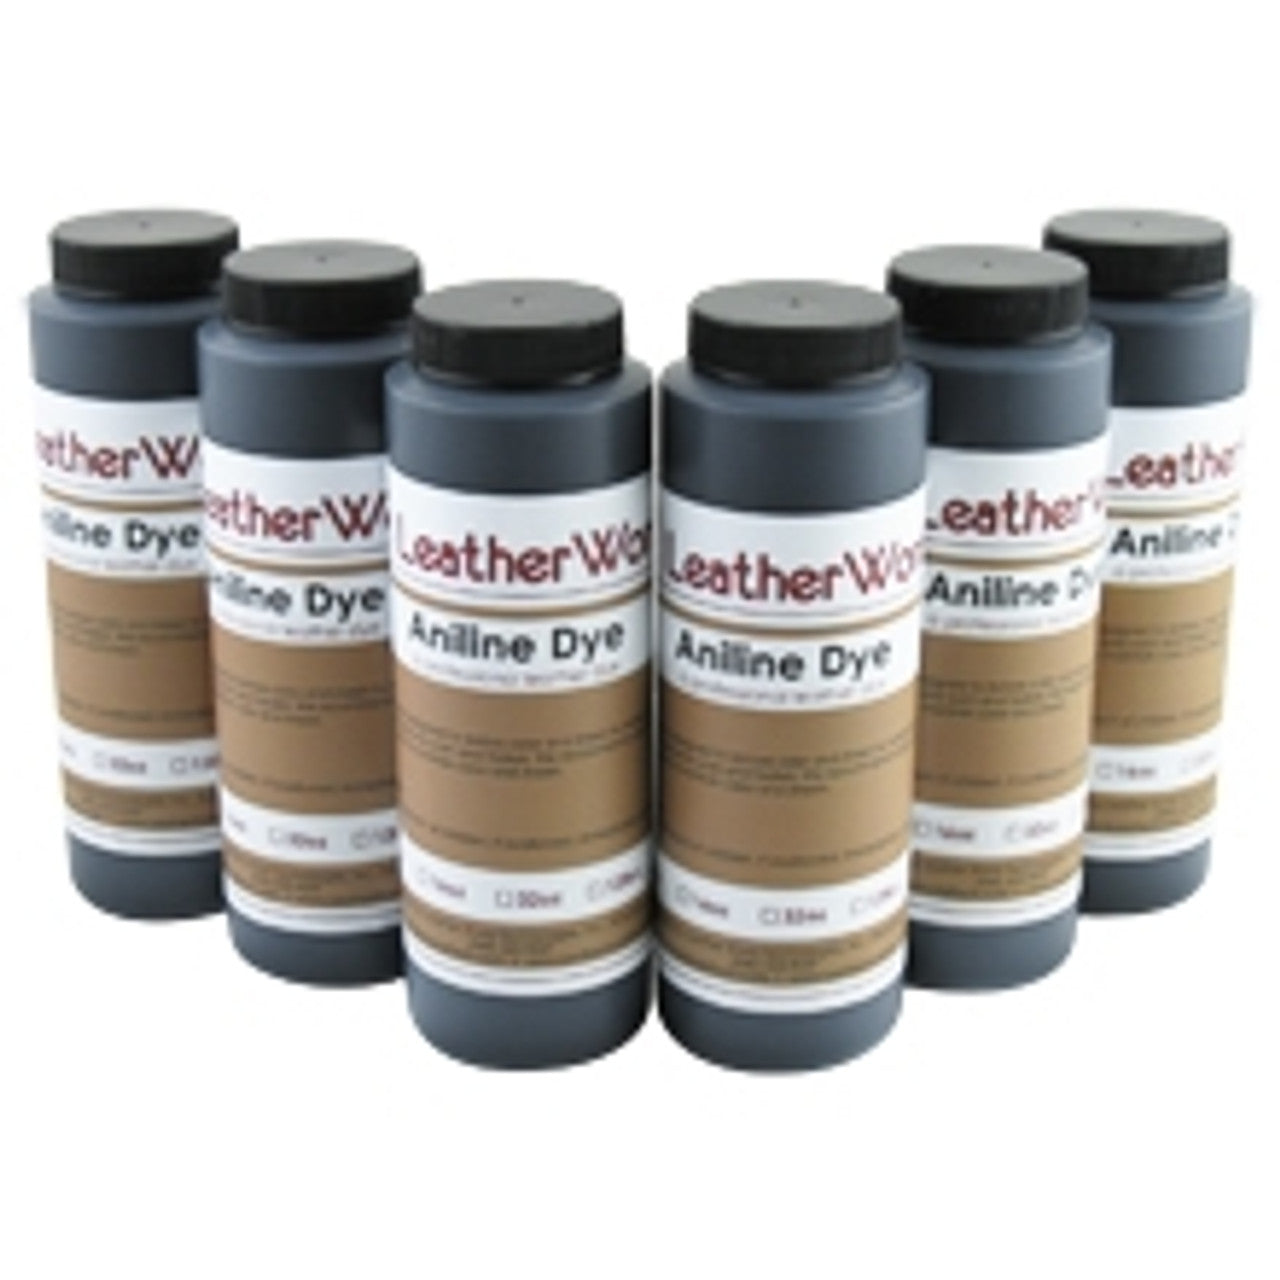 Aniline Dye Starter Pack